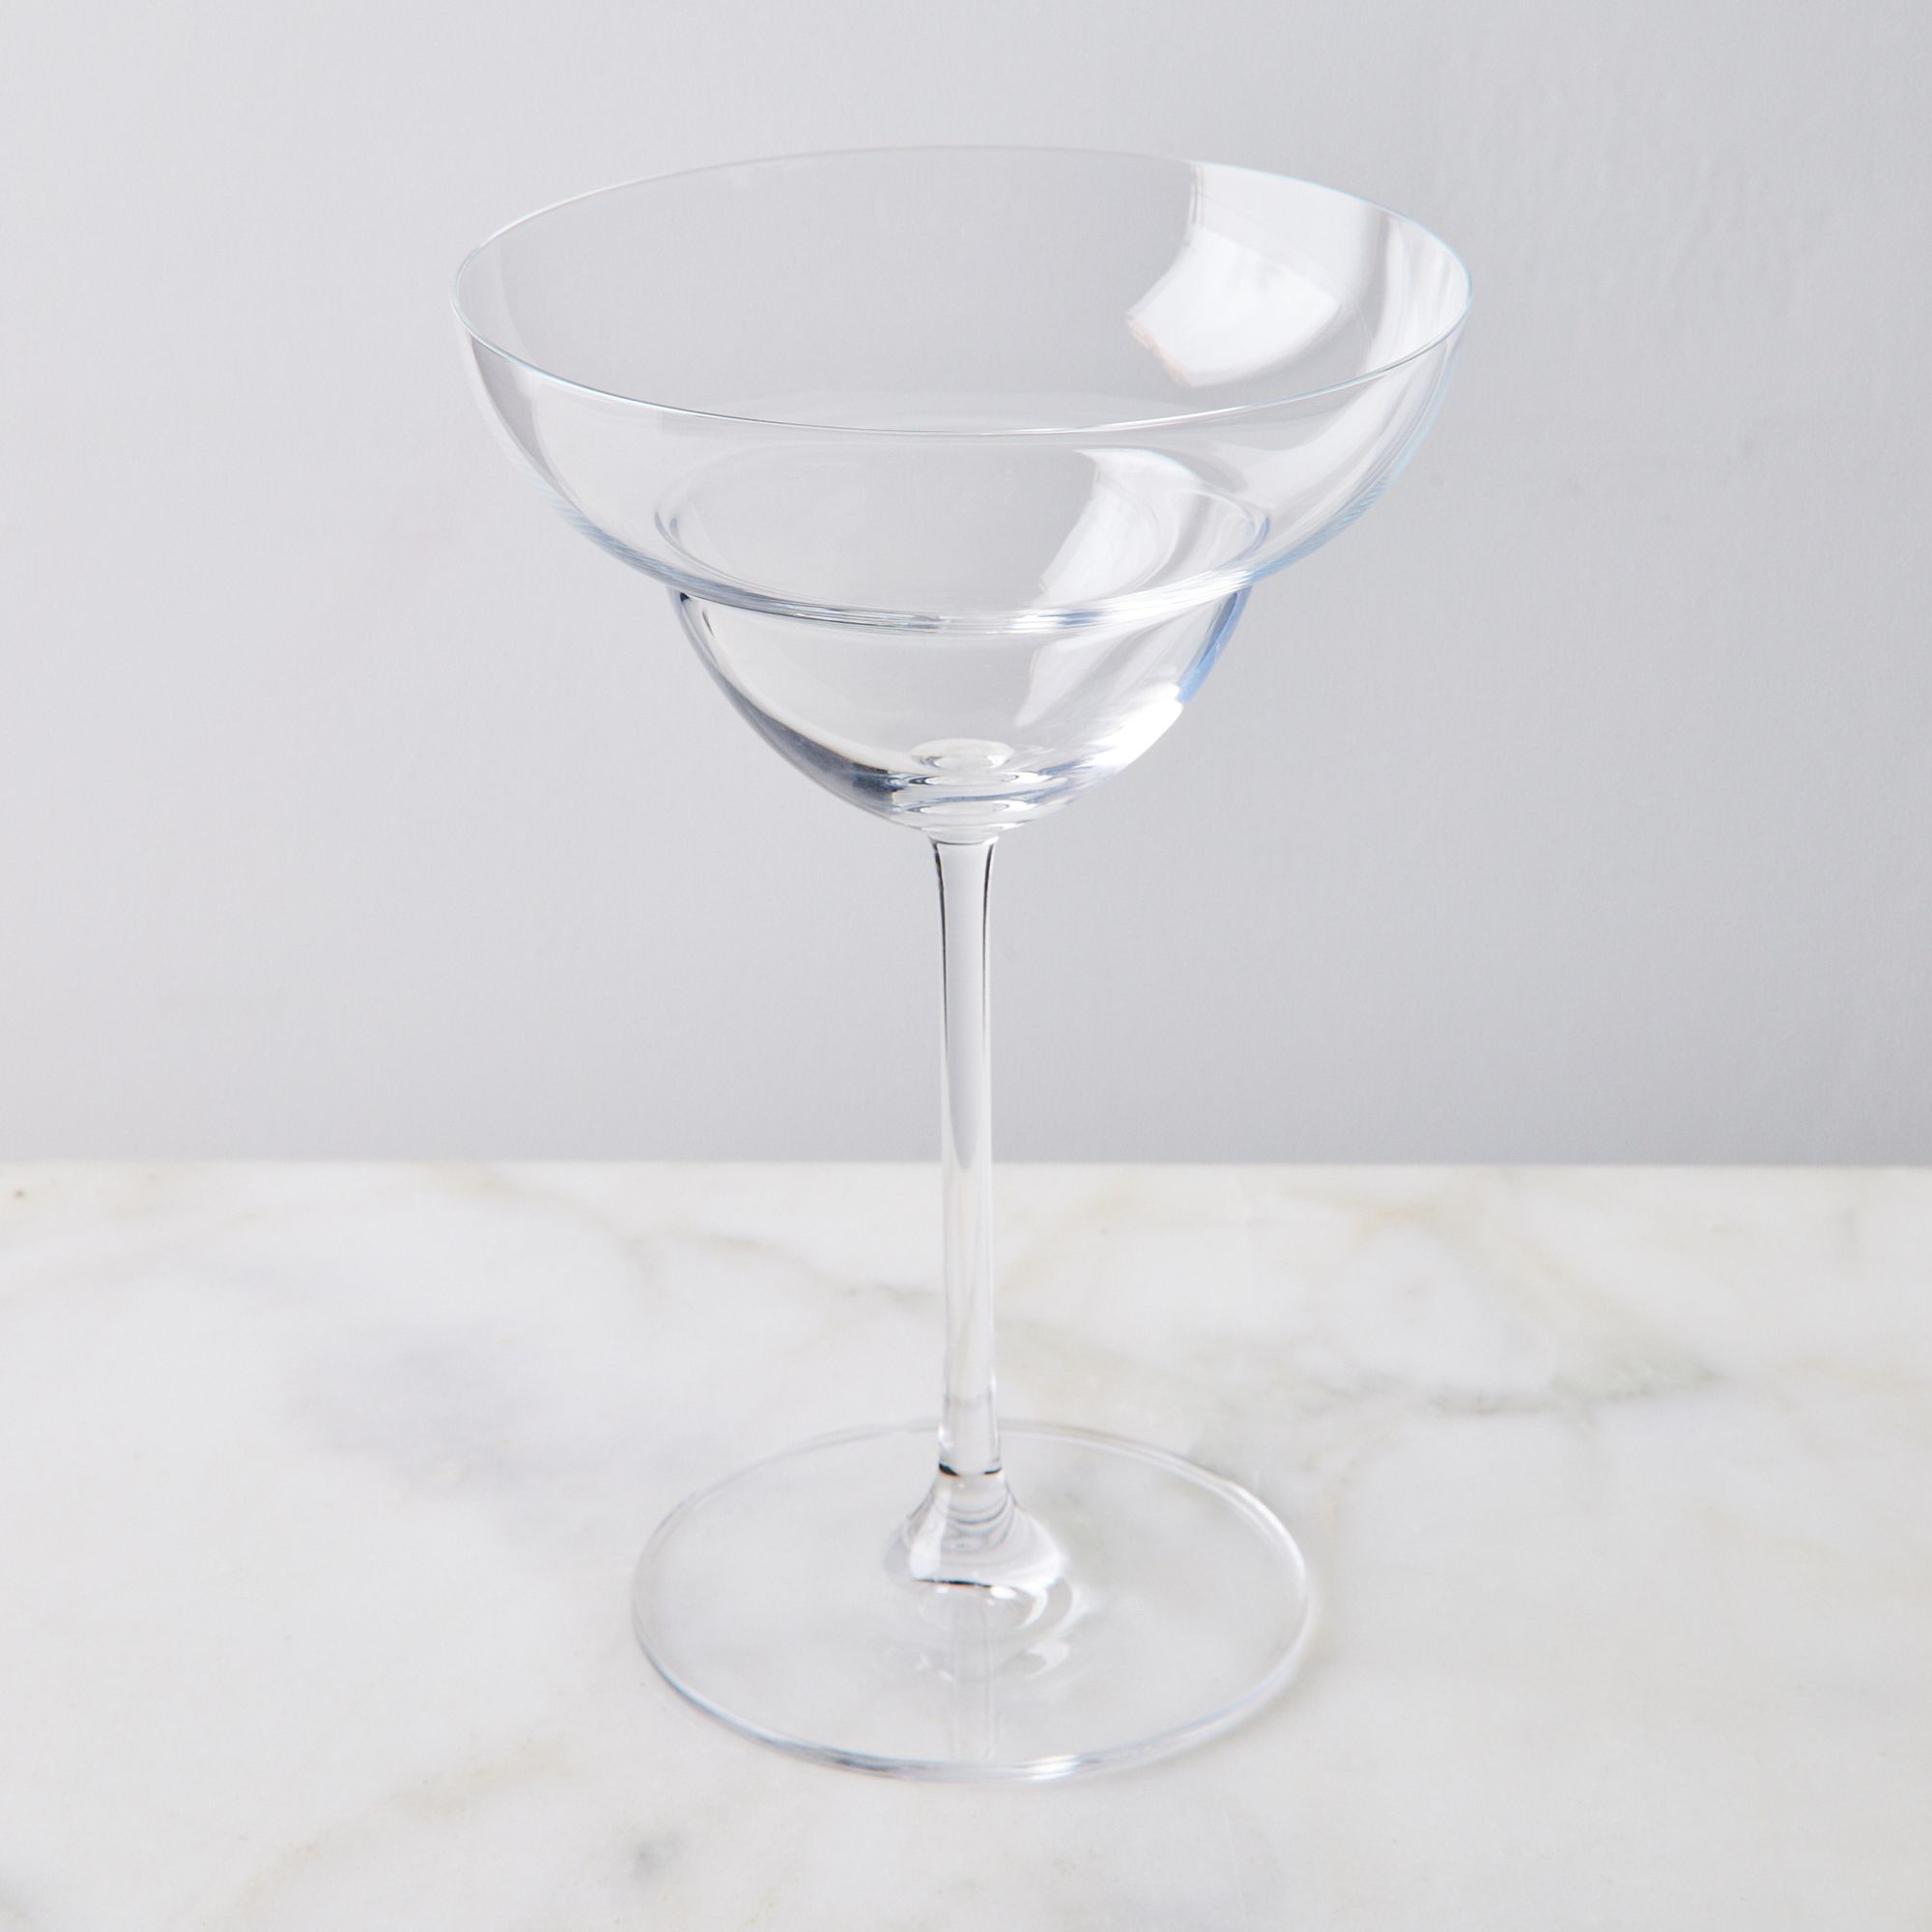 Food52 Vintage-Inspired Etched Martini & Cocktail Glasses - Goblet (Set of 4)